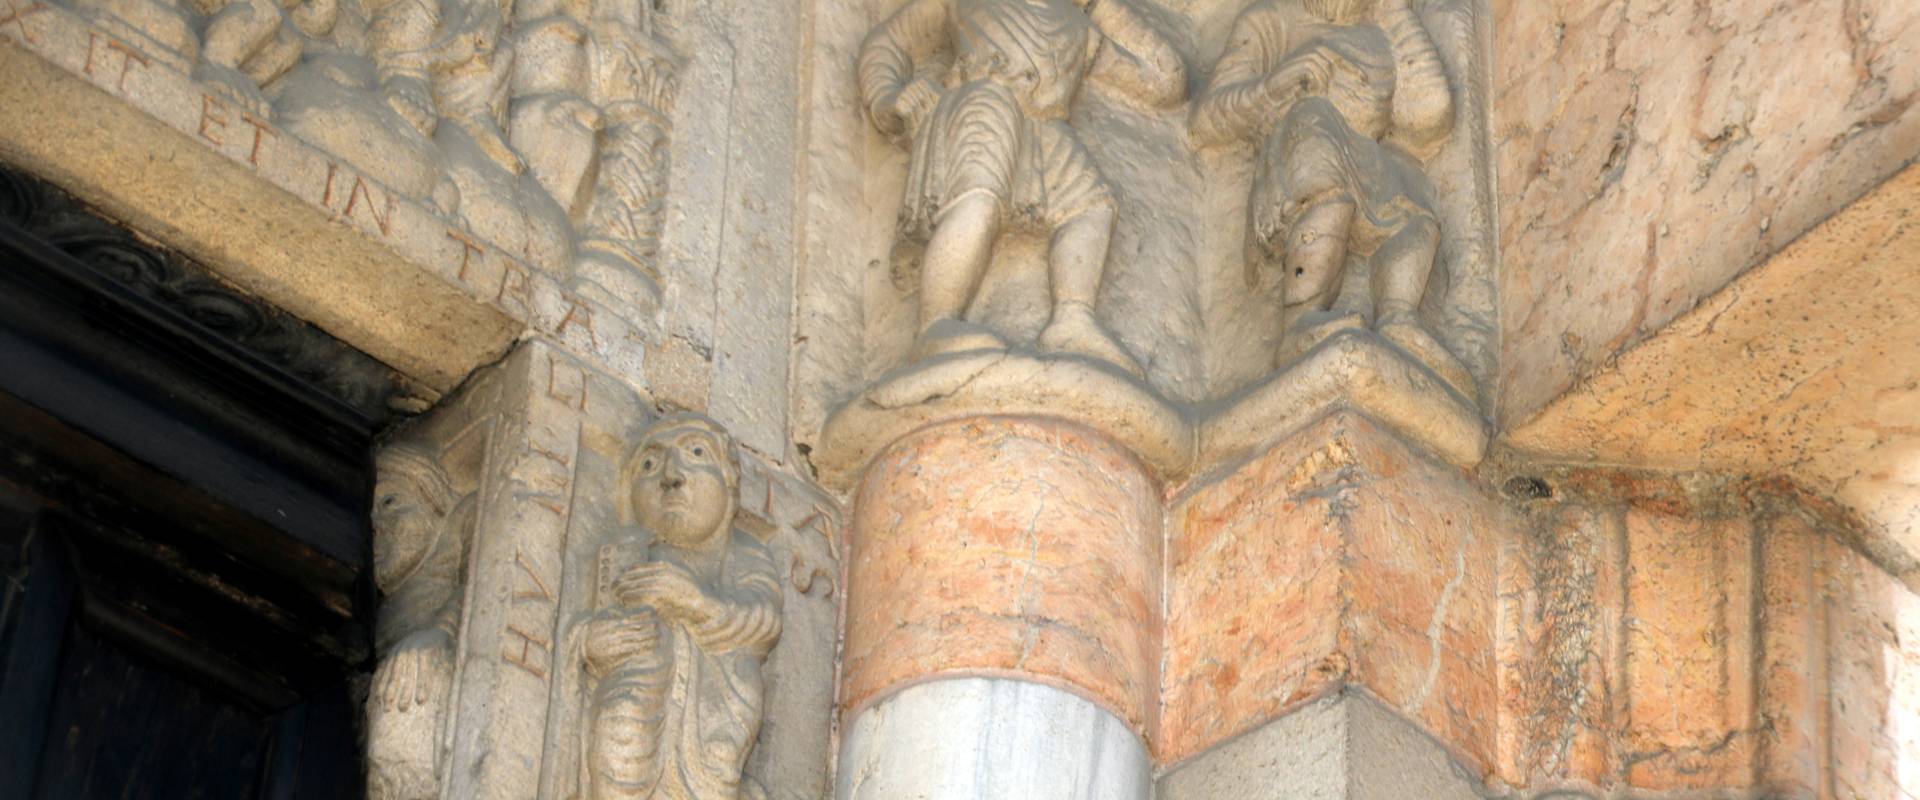 Duomo (Piacenza), portale destro, due personaggi vestiti si allontanano con espressioni colpevoli (Adamo ed Eva?) 03 foto di Mongolo1984